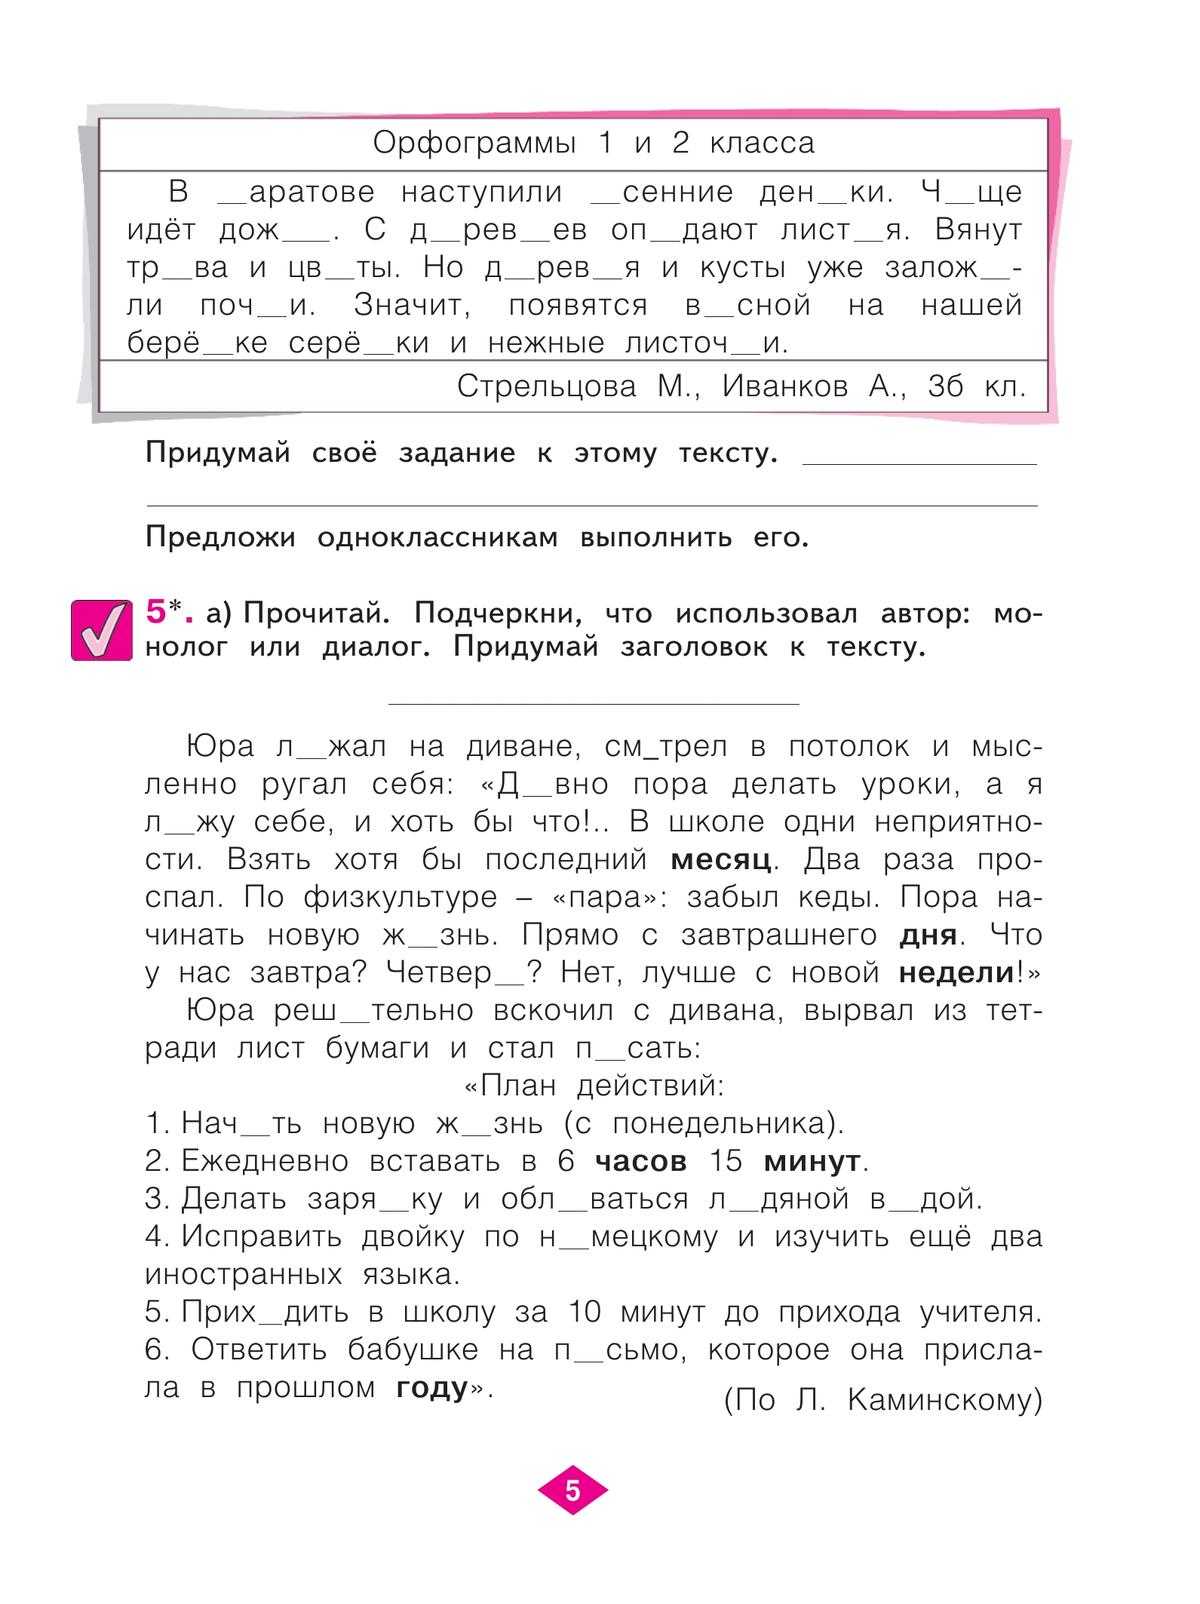 Русский язык. Рабочая тетрадь. 3 класс. В 4-х частях. Часть 1 4